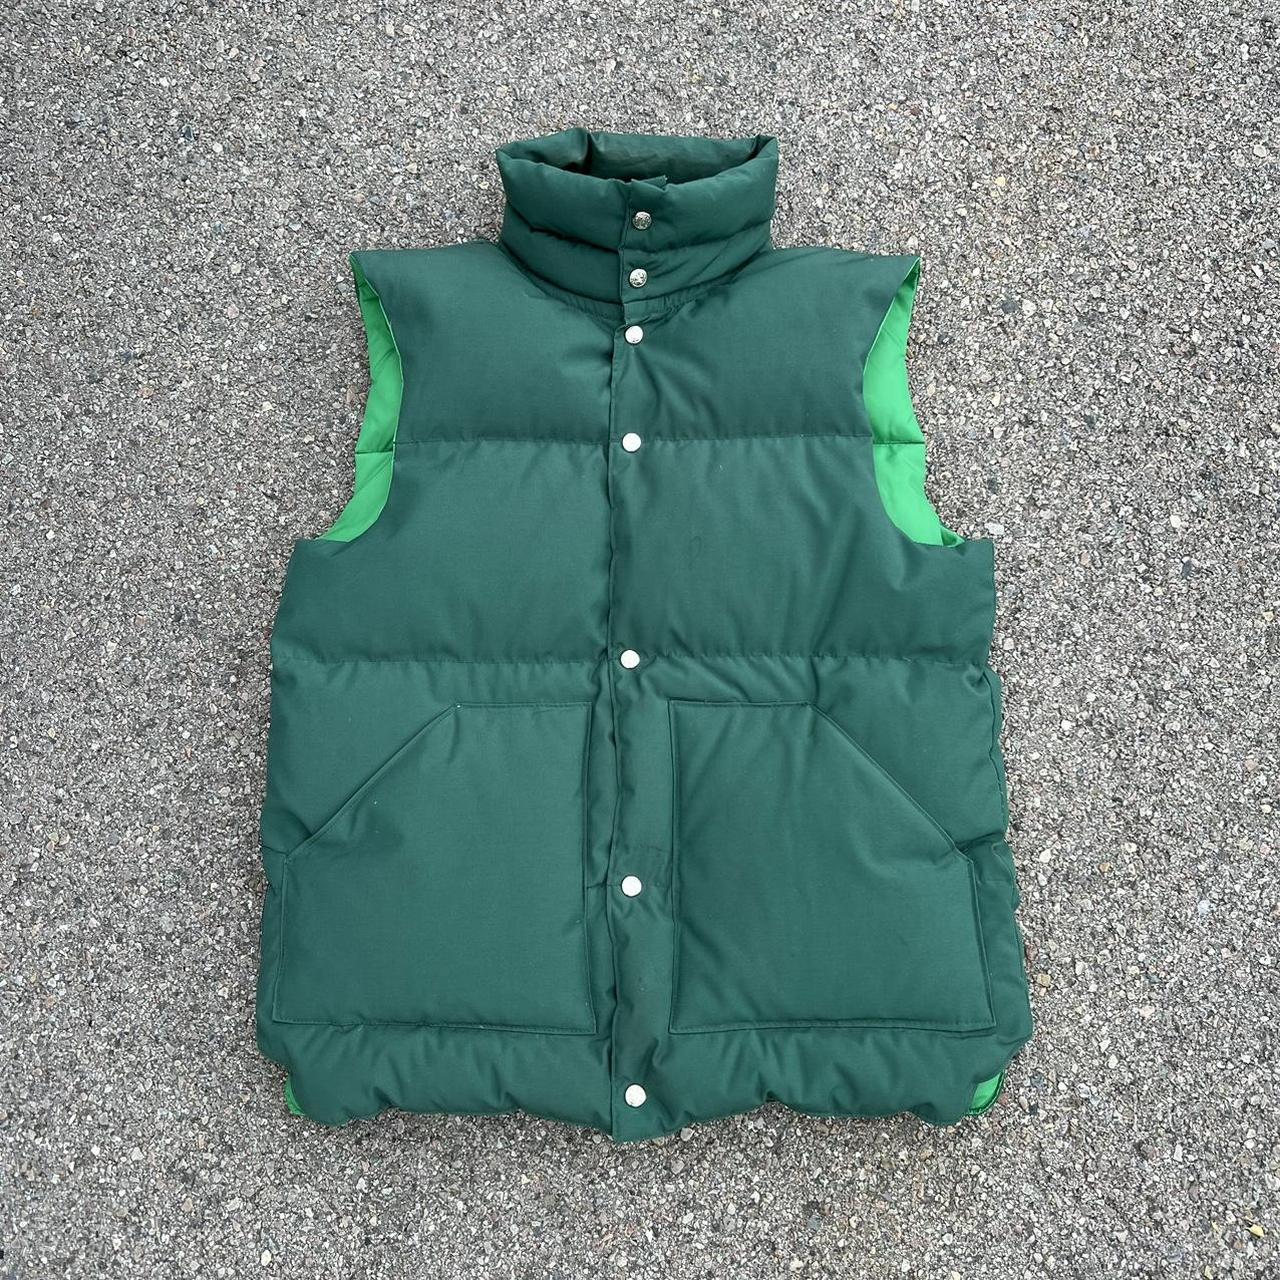 Vintage forest green puffer vest 80s / 90s goose... - Depop